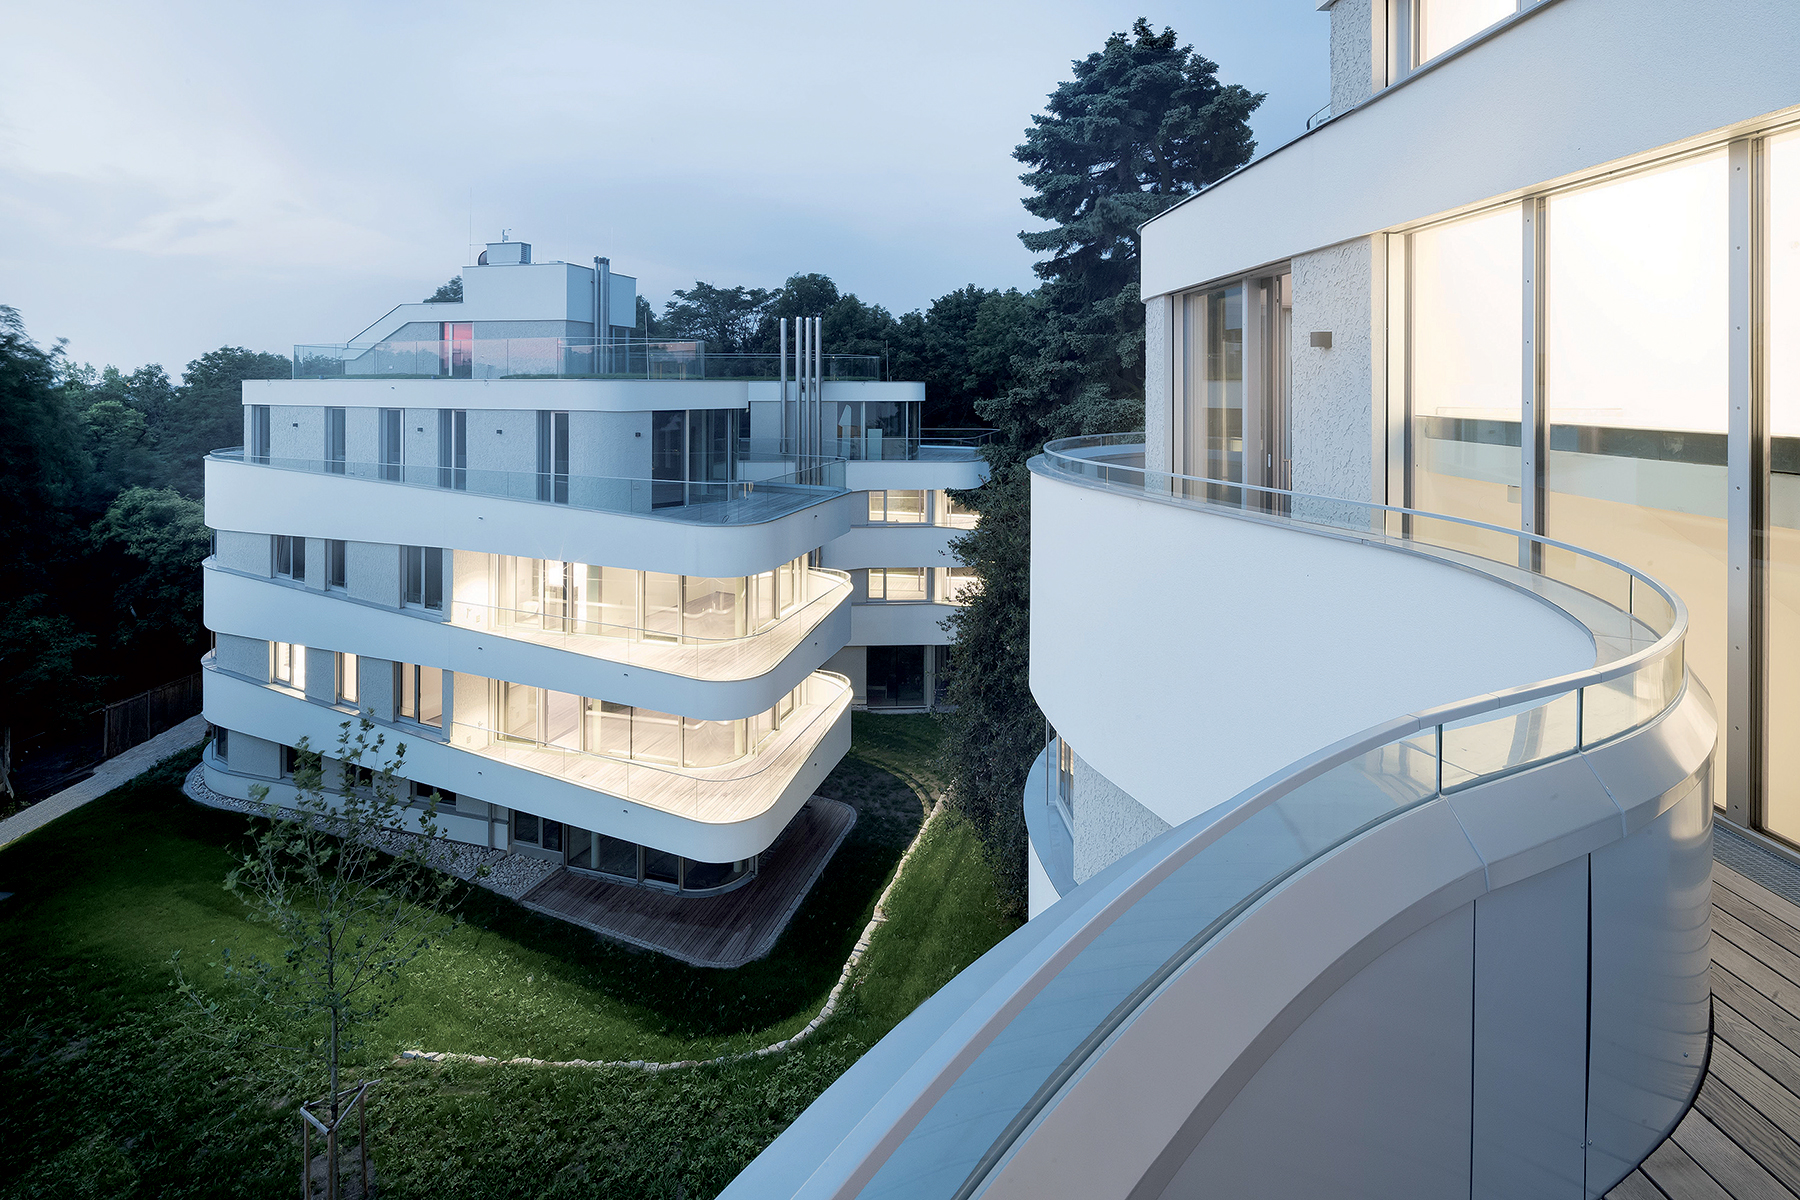 V domoch sa nachádza 23 bytov v luxusnej výmere od 110 do 260 m2 s rozľahlými balkónmi a terasami.